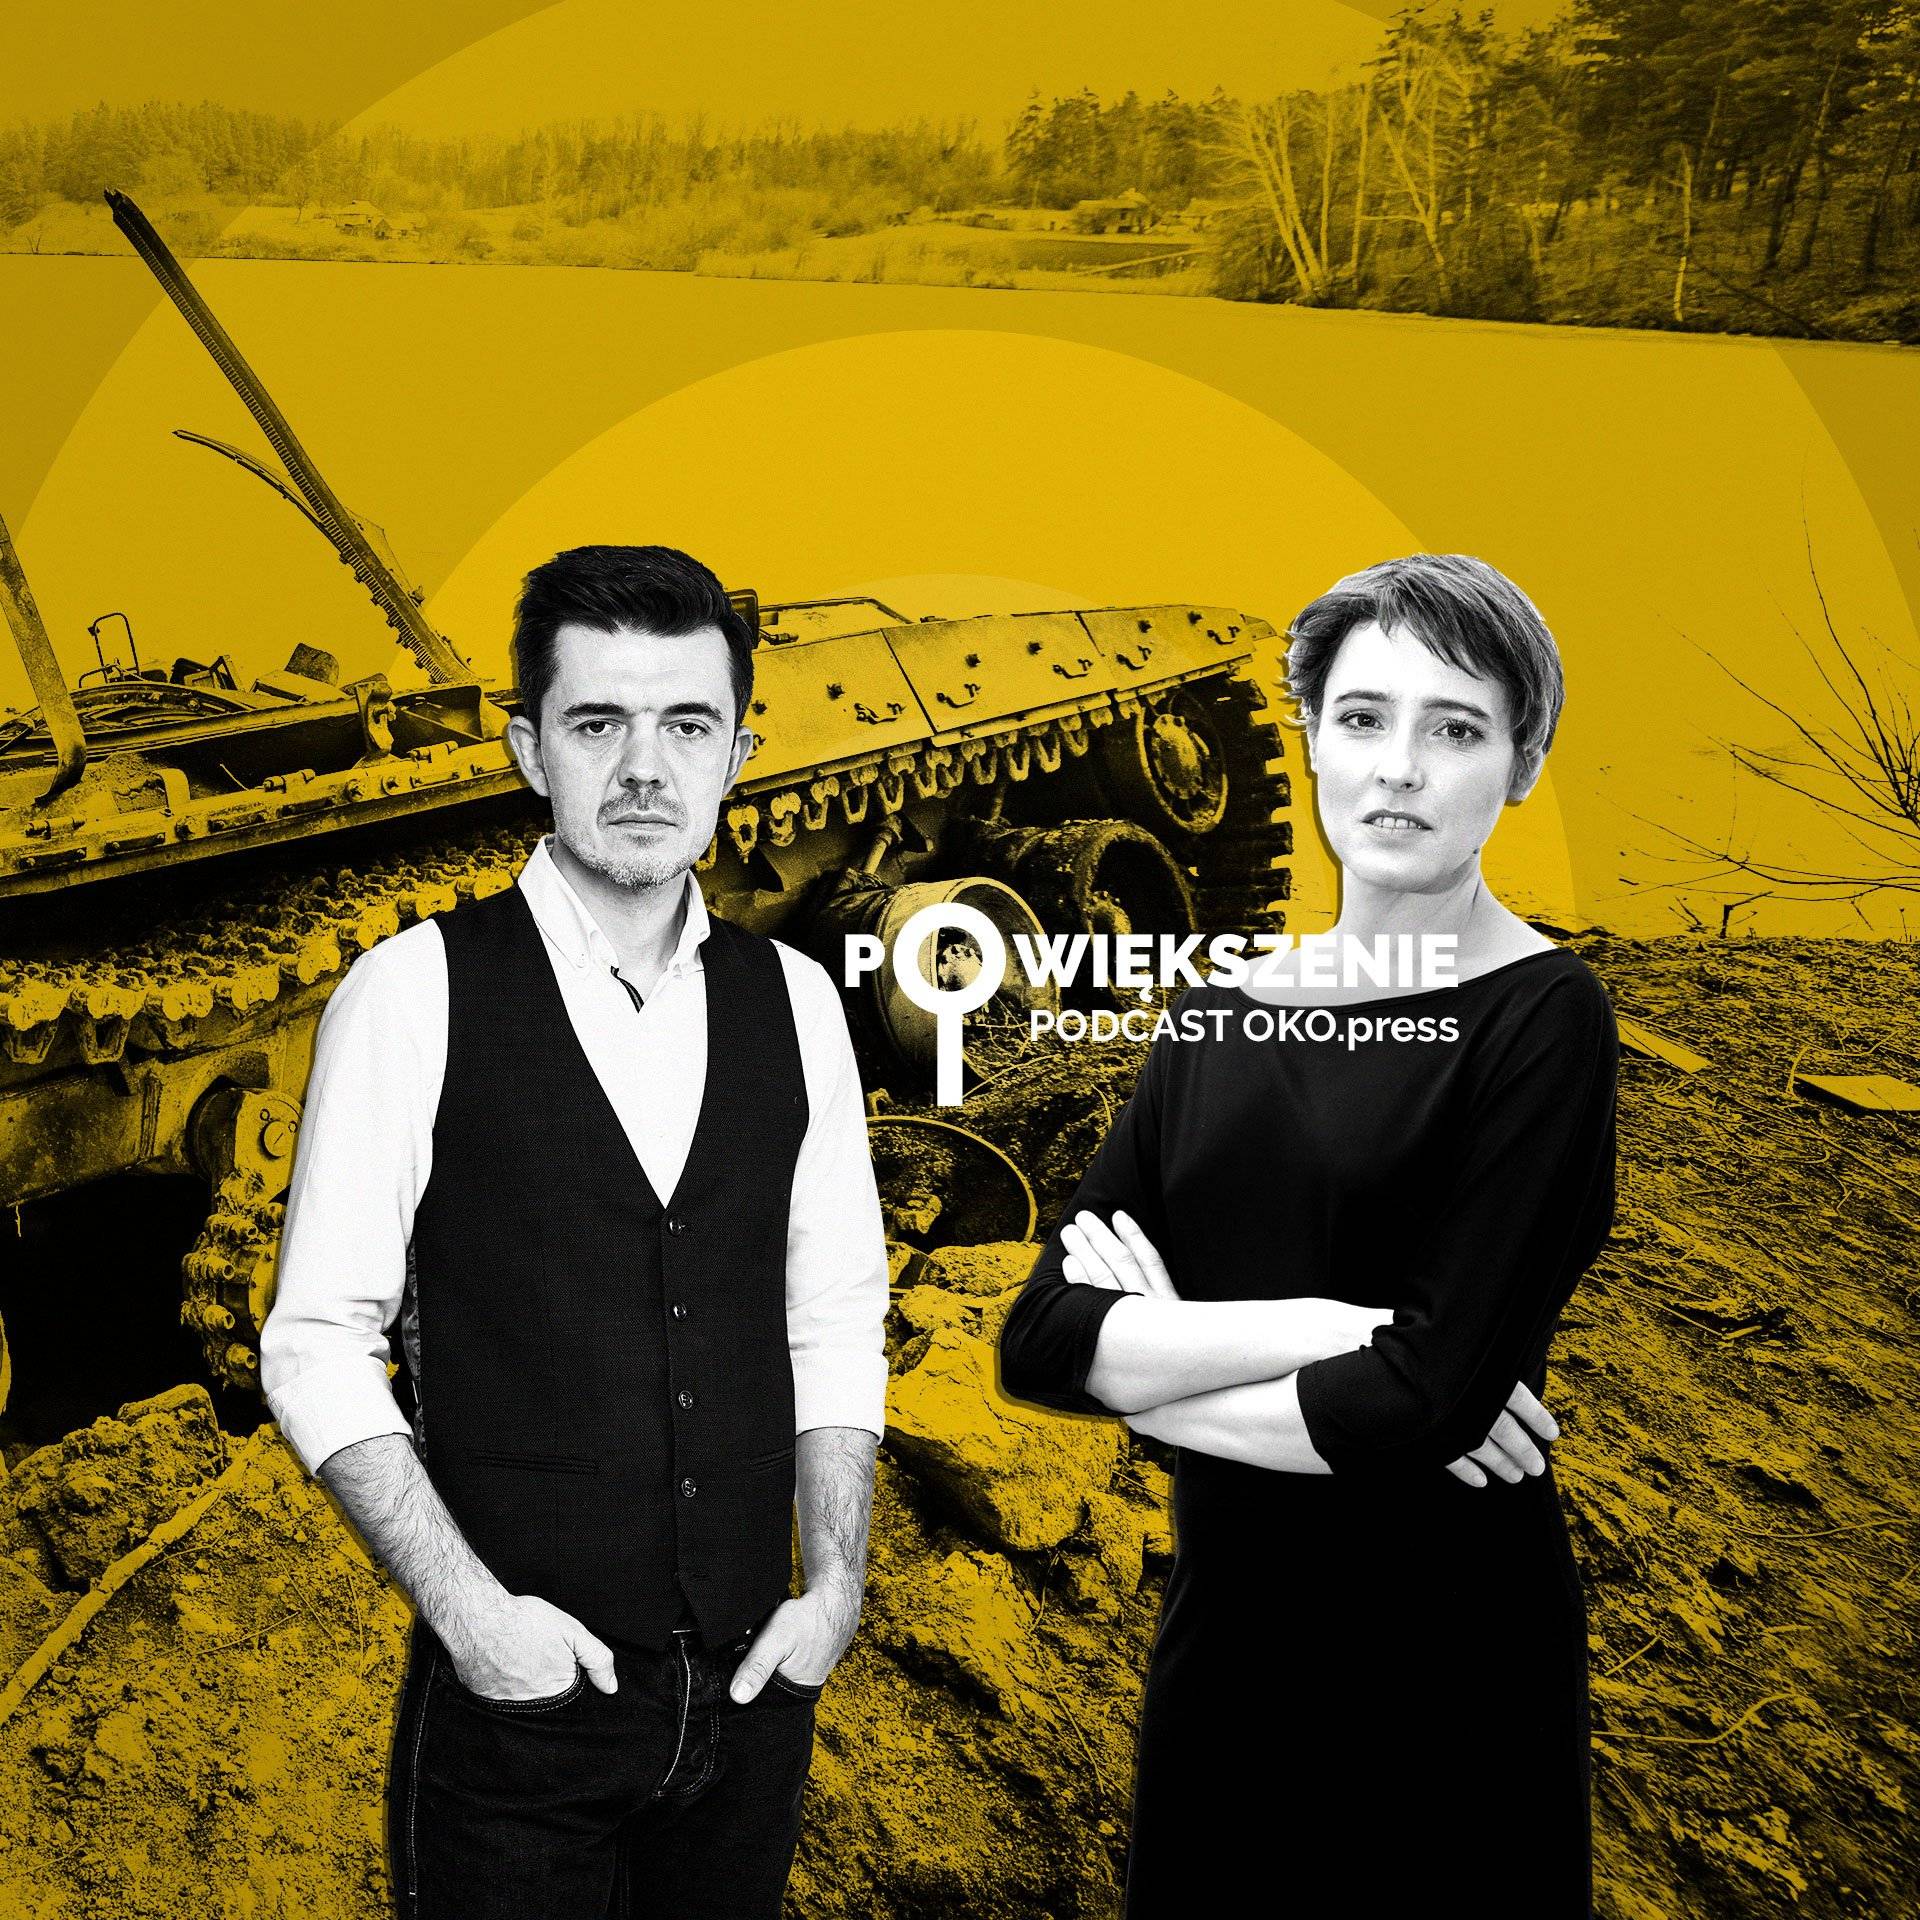 Powiększenie - podcast OKO.press; Agata Kowalska i Witold głowacki na tle uszkodzonego rosyjskiego czołgu